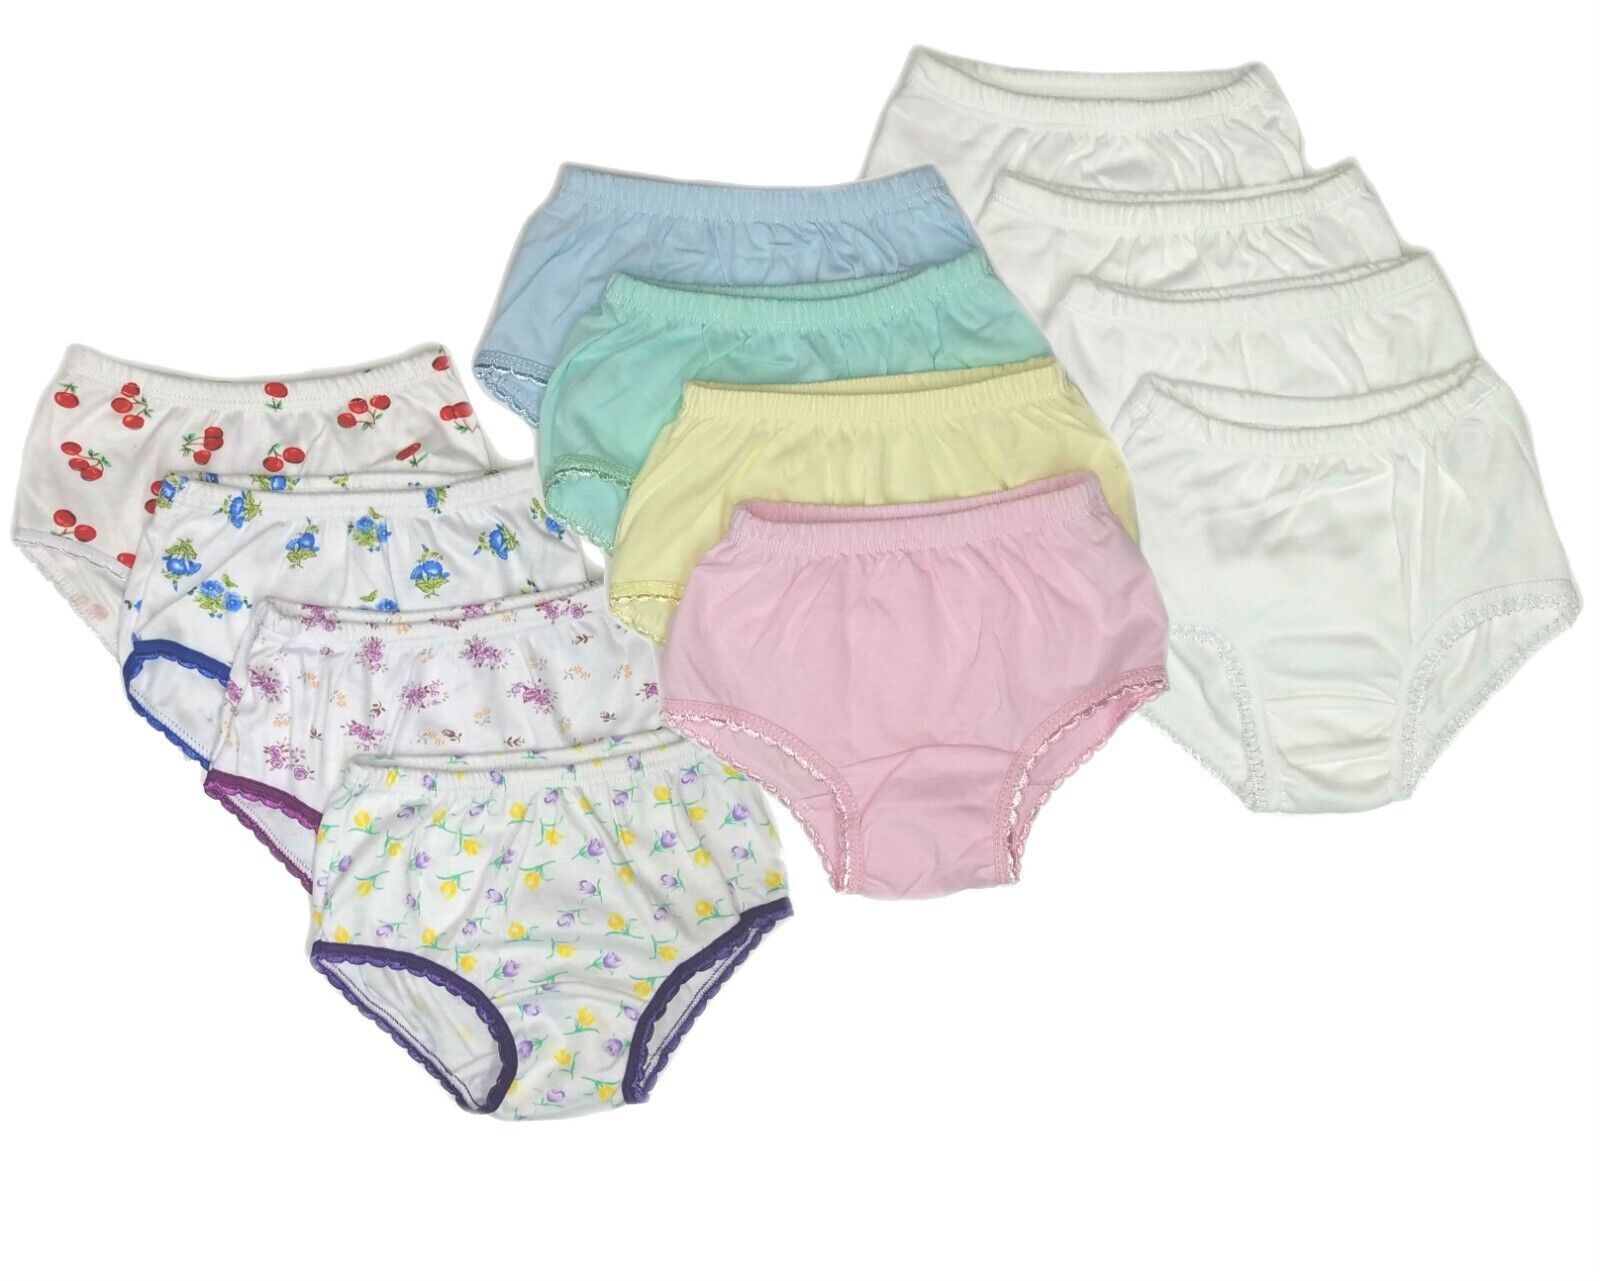 Toddler Briefs Underwear Girls Panties Soft Cotton Comfort White 8 Pack